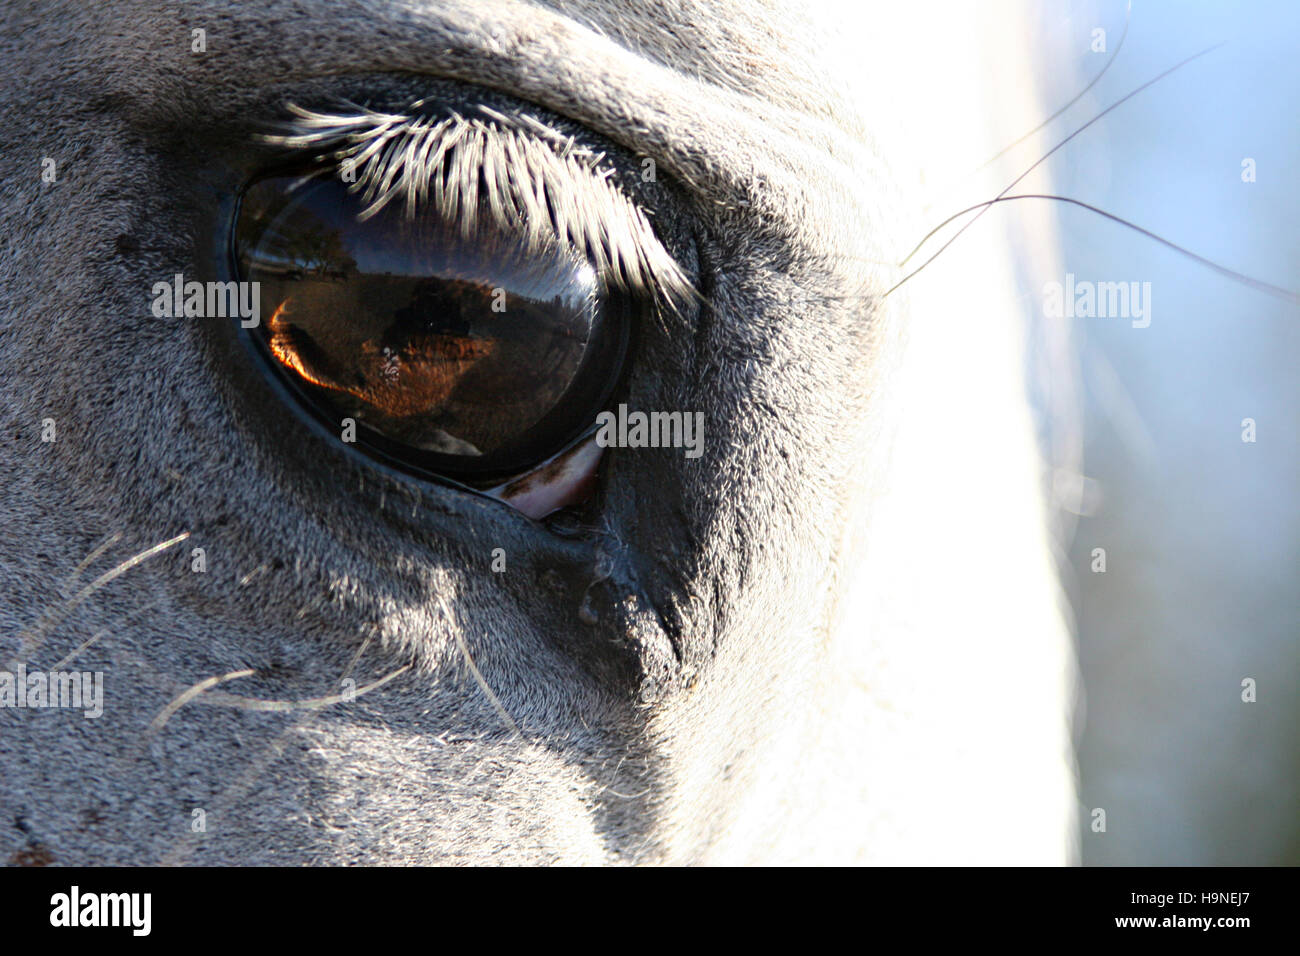 Pferdeauge, ein Auge eines Pferdes Stockfoto